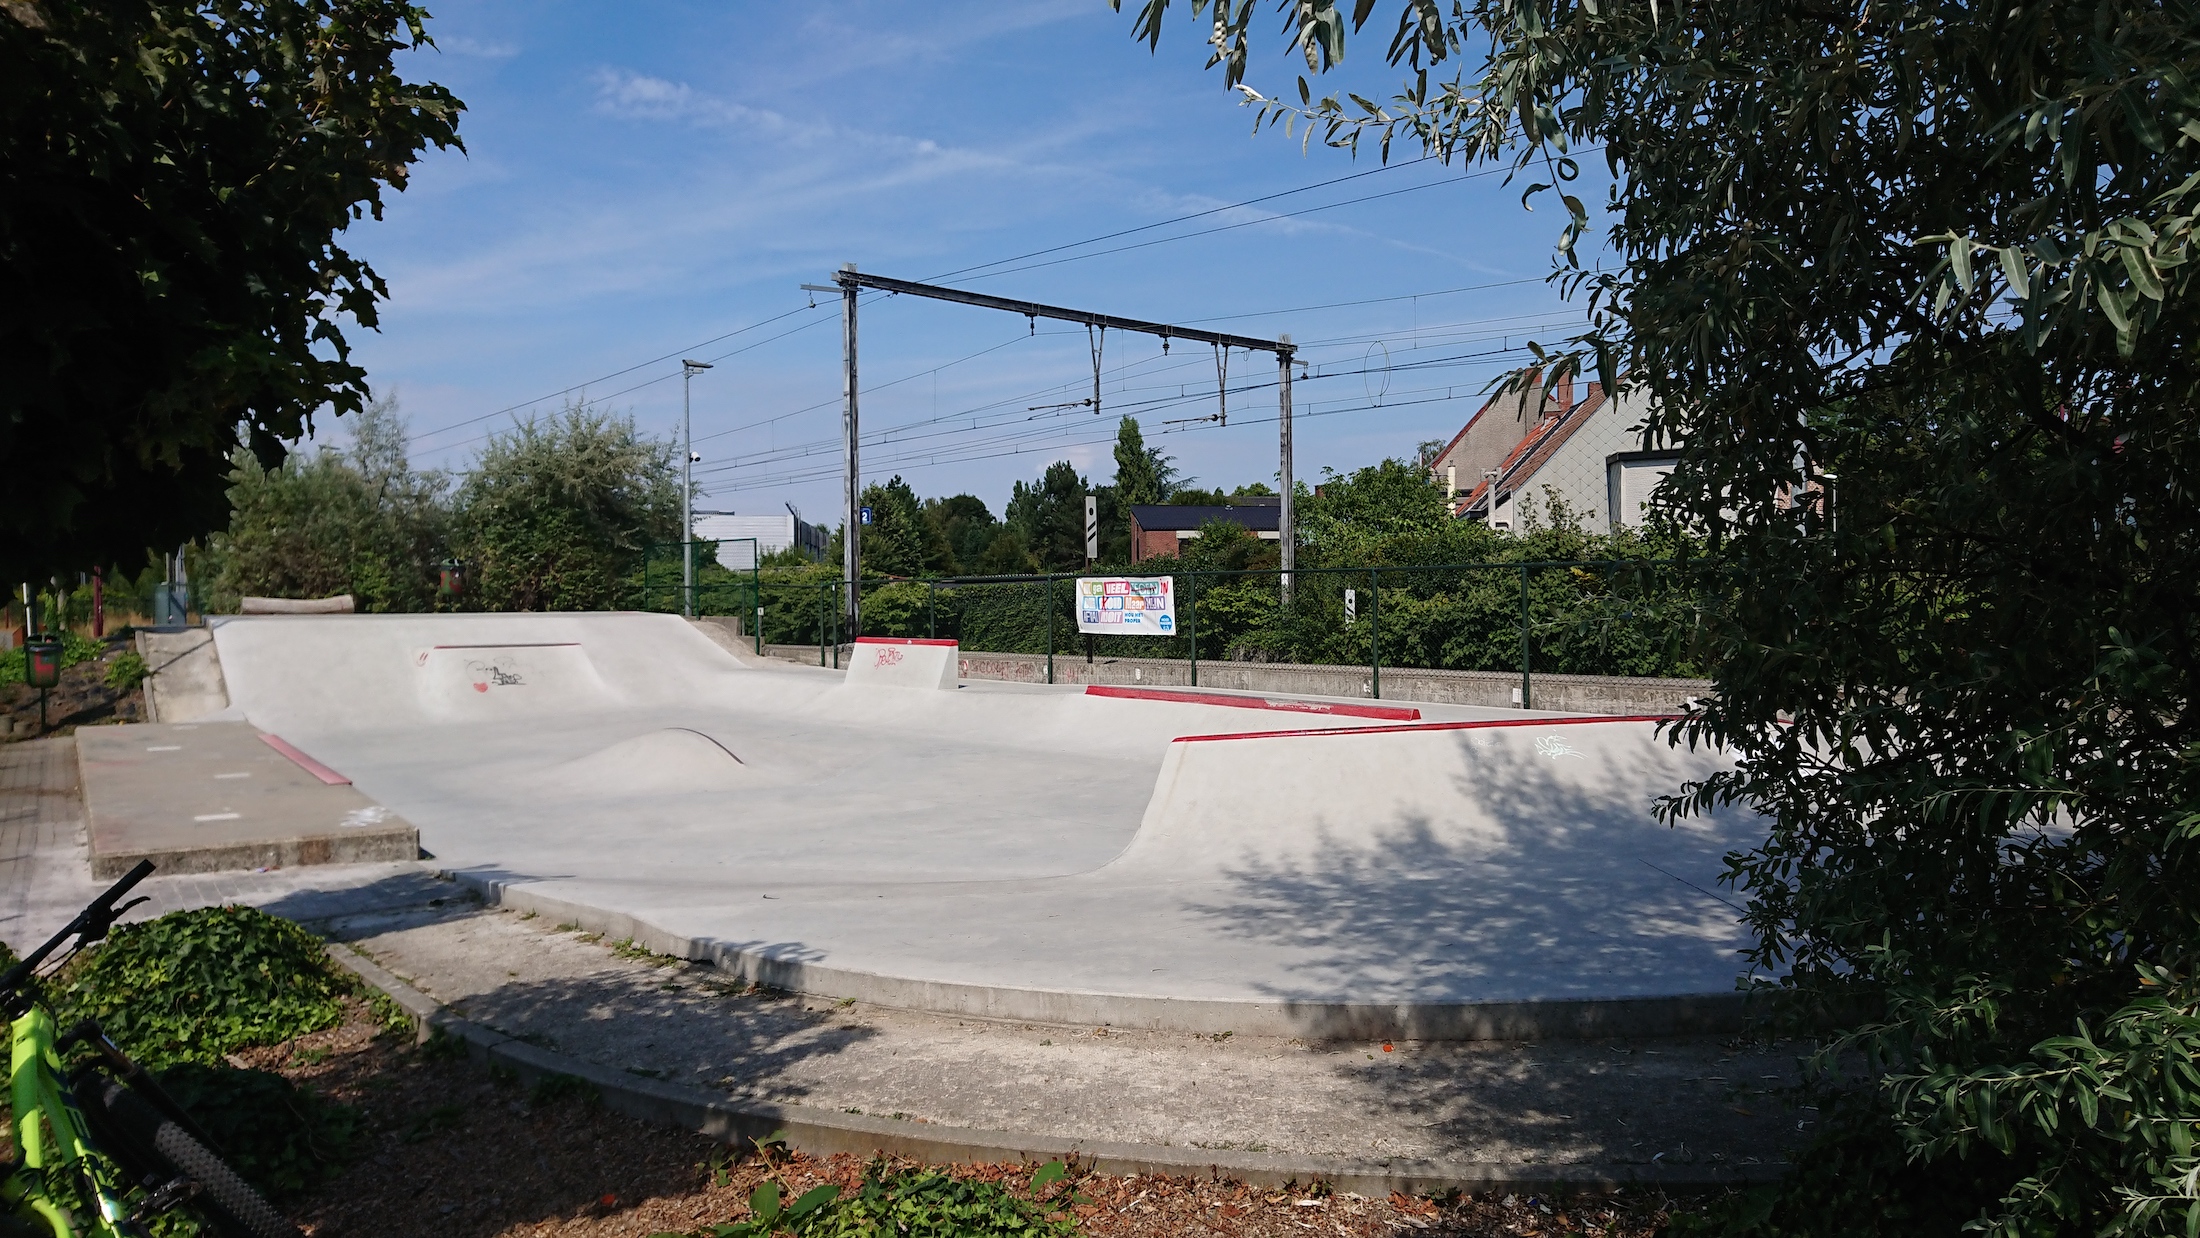 Boechout skatepark